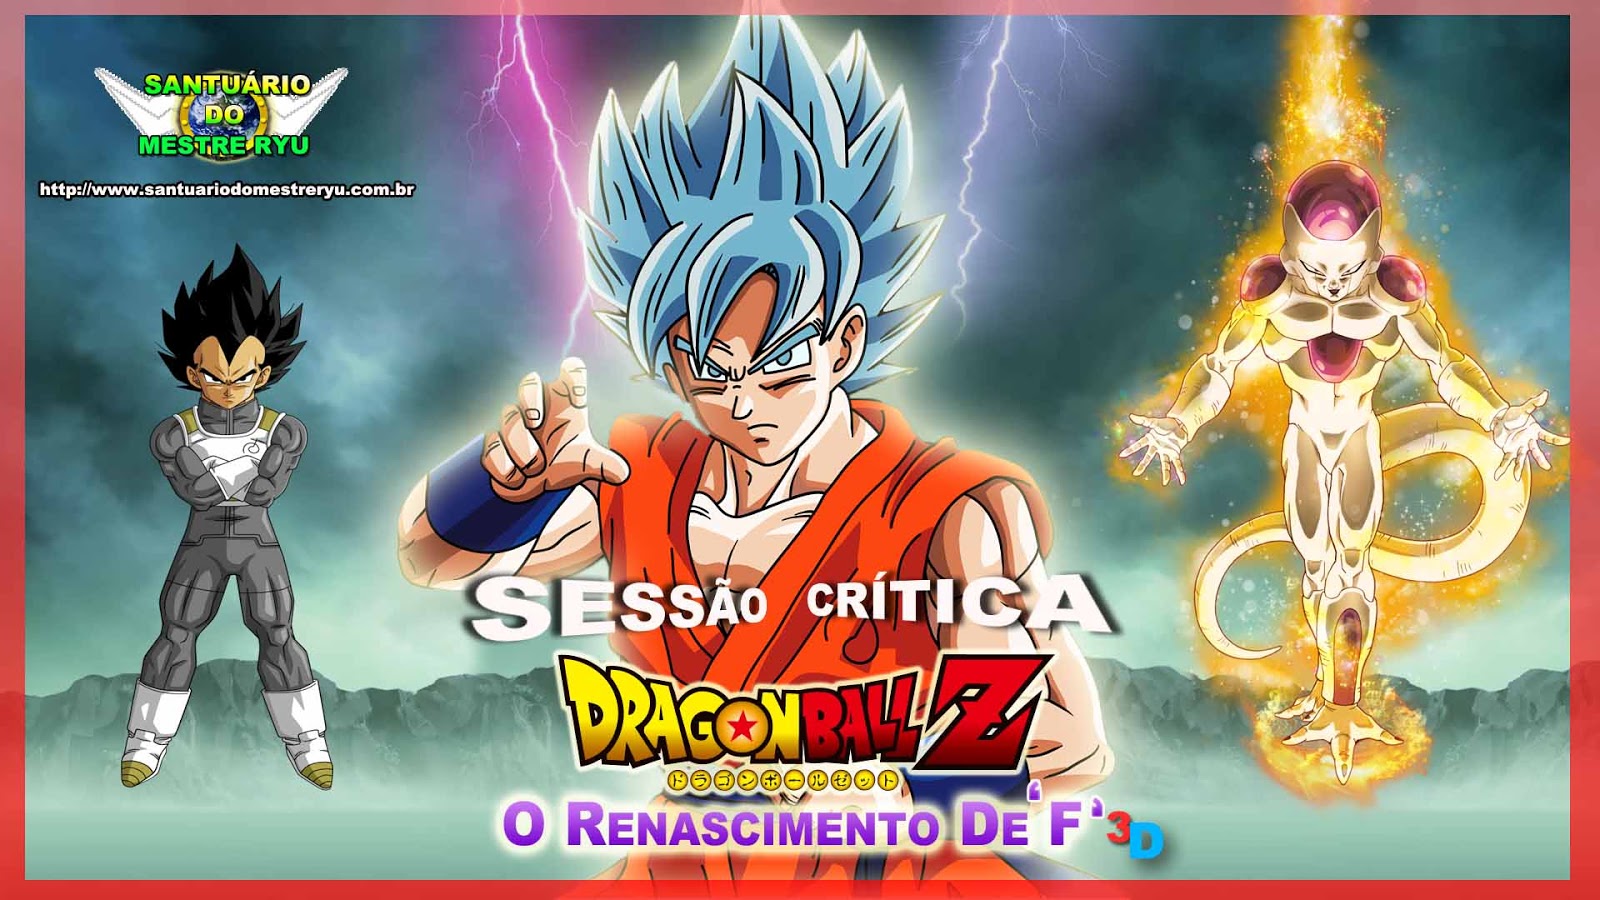 Buraco 3D Dragon Ball - Freeza EM PROMOÇÃO!